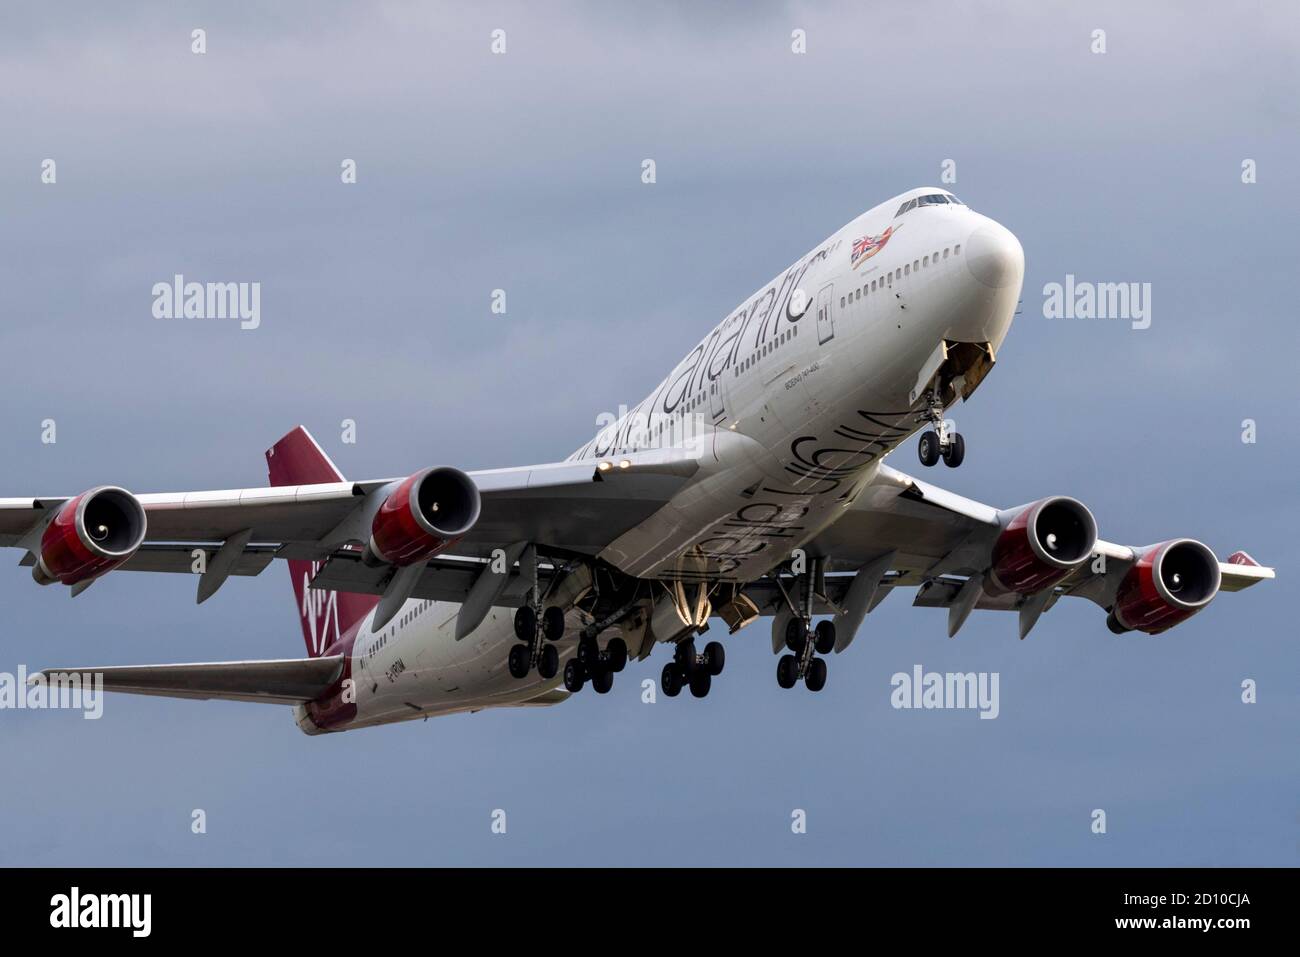 Virgin Atlantic Boeing 747 Jumbo Jet-Flugzeug, das nach der Lagerung vom Flughafen London Heathrow in Großbritannien abfliegt. Vorzeitige Pensionierung aufgrund von COVID19. Verkauft Stockfoto